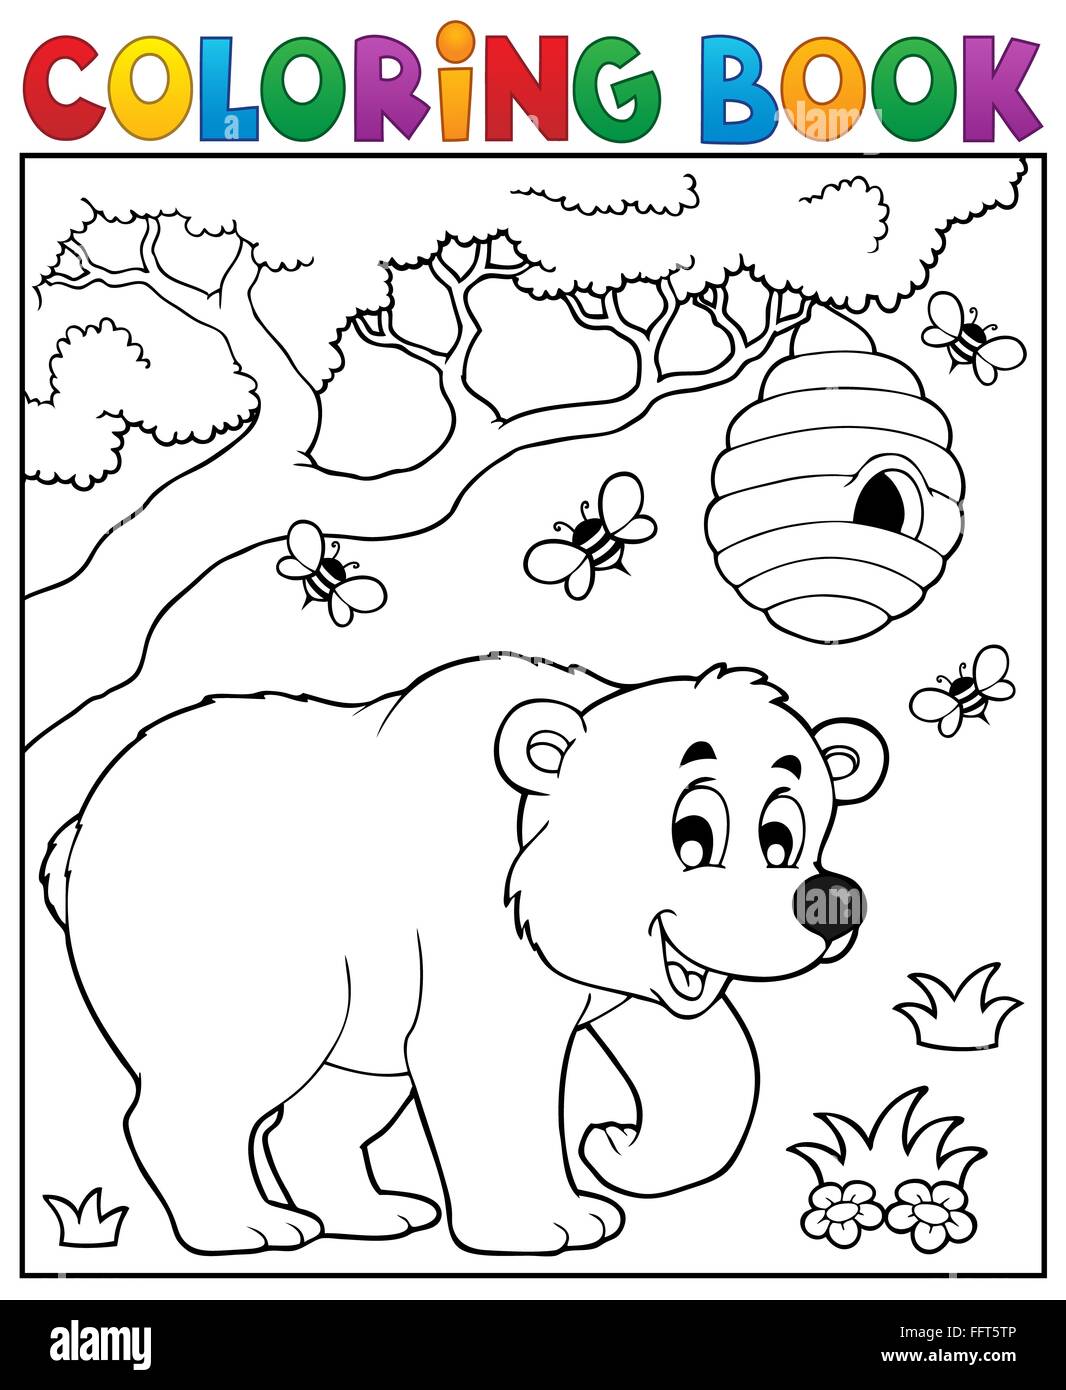 Coloring book bear theme